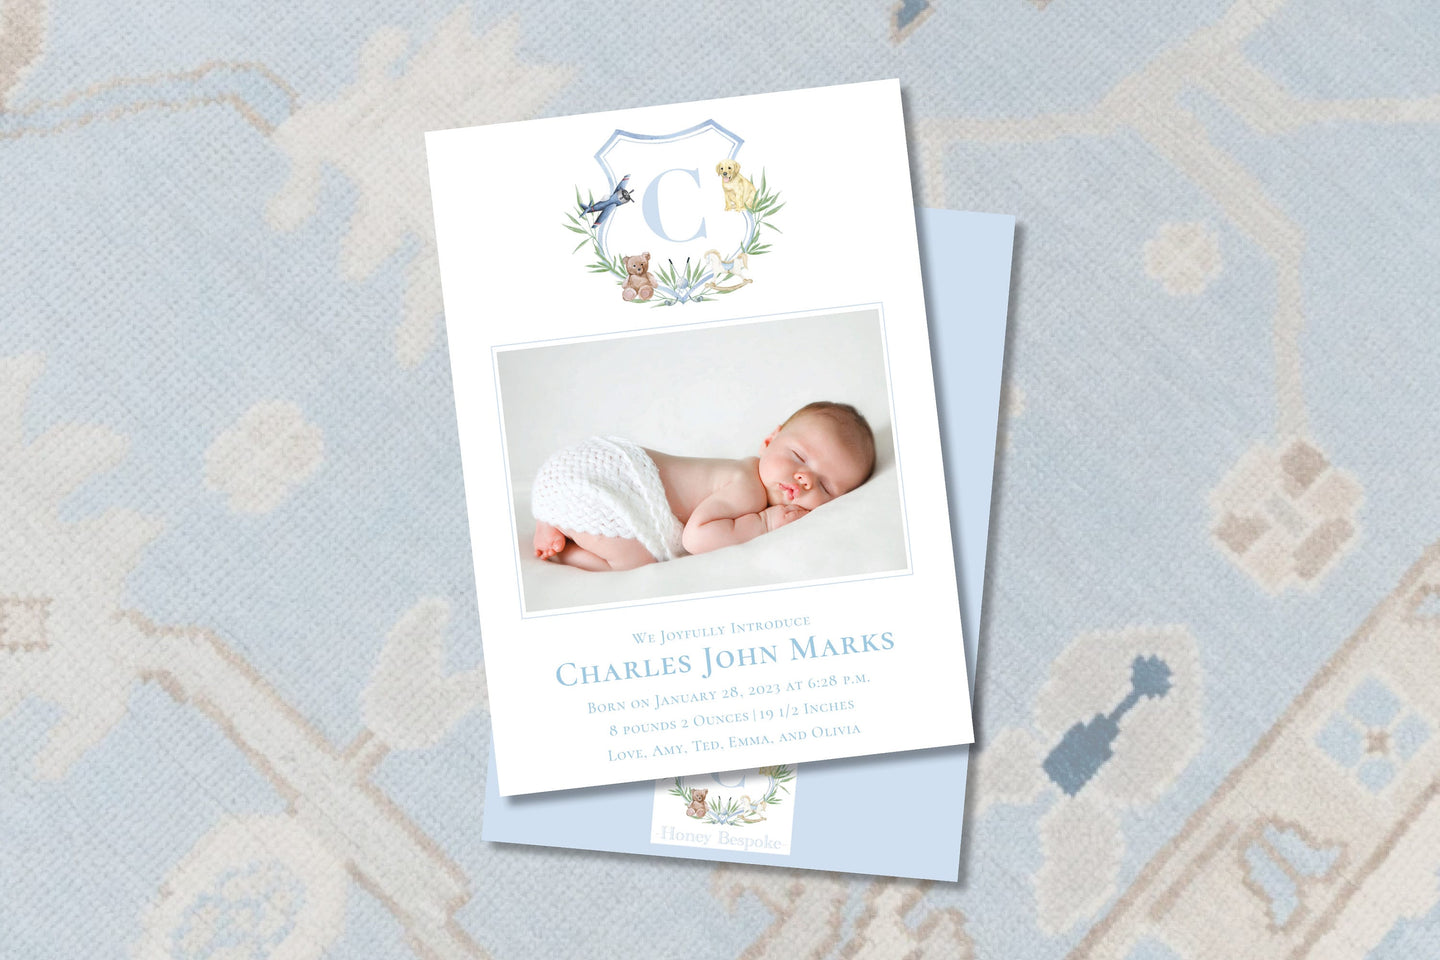 Watercolor Crest Baby Birth Announcement / Gingham / Classic / Birth / Blue /Newborn / Girl / Boy / Invitation / Watercolor / Preppy / Photo